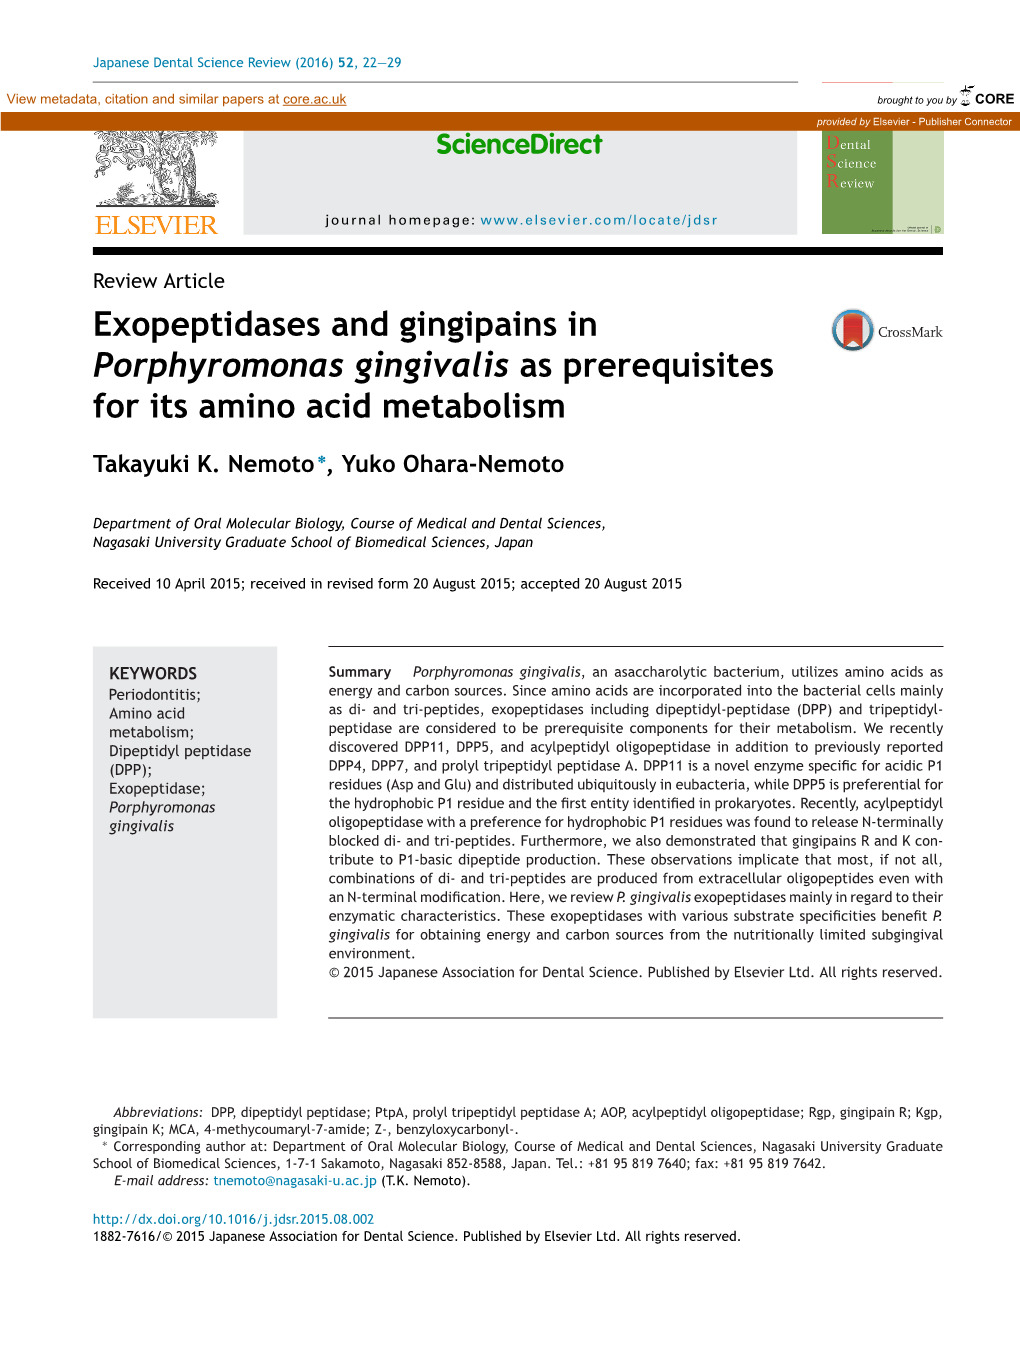 Exopeptidases and Gingipains in Porphyromonas Gingivalis